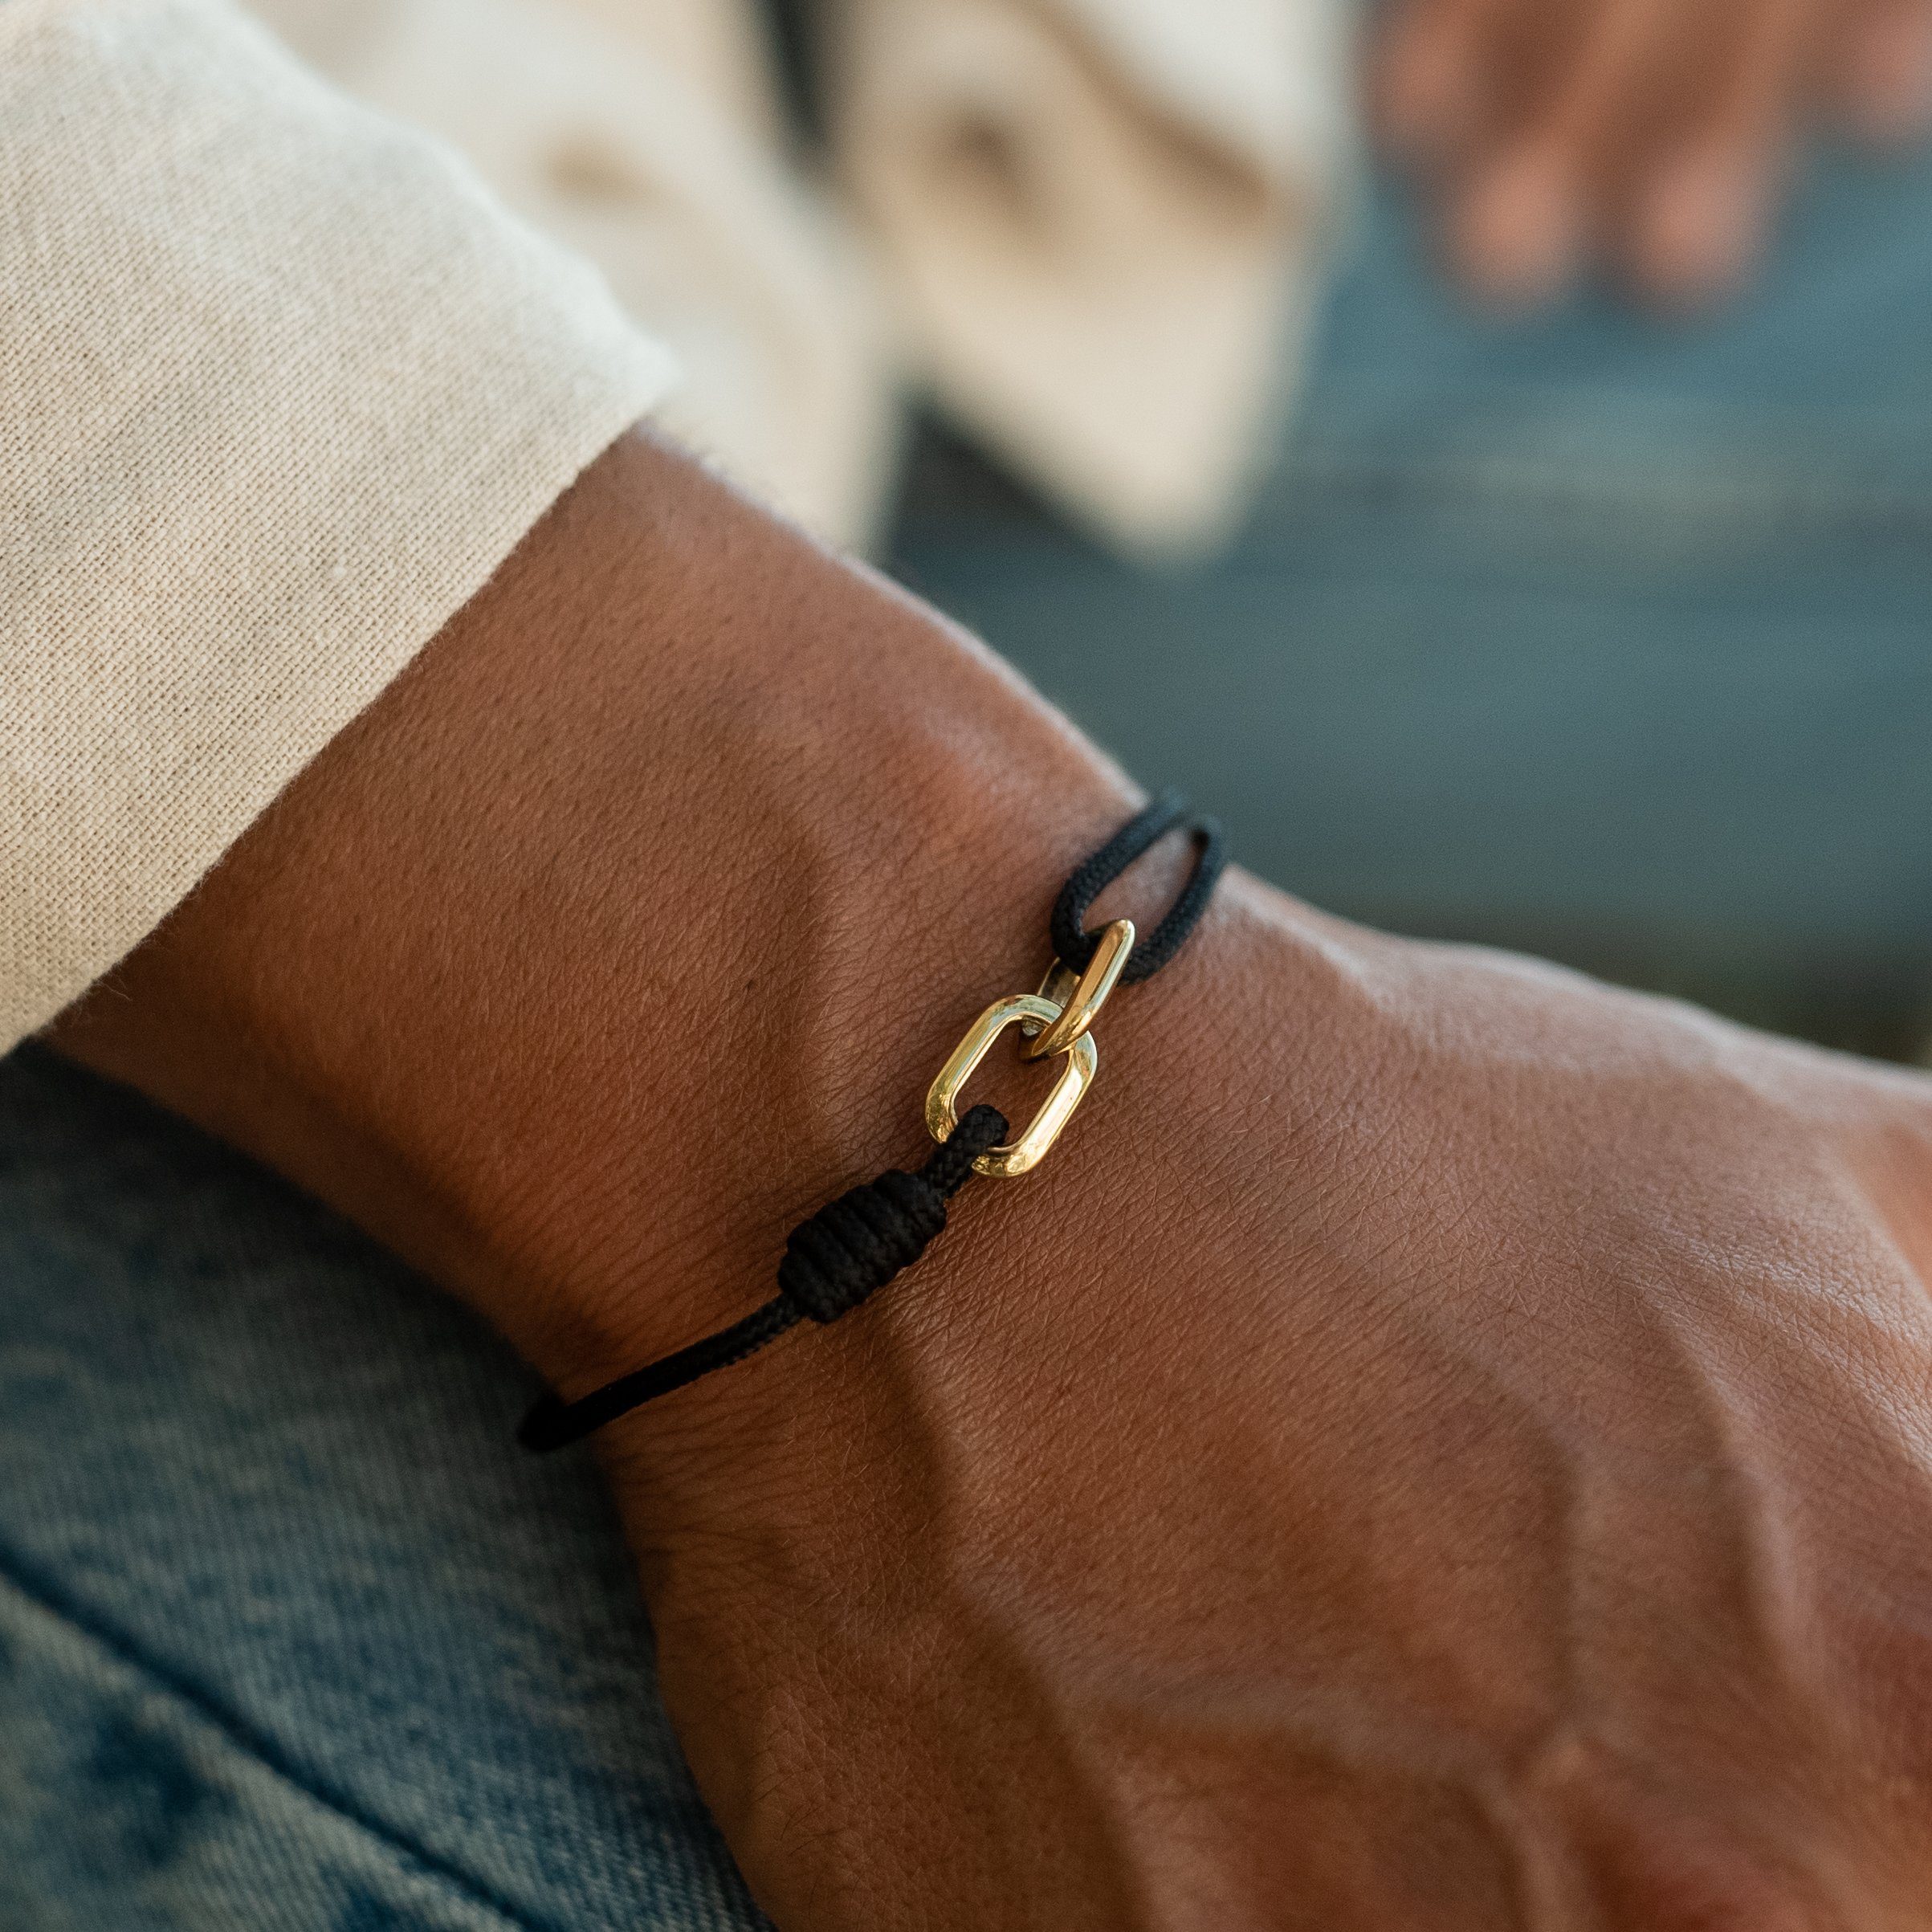 Made by Nami Armband Herren Surfer Armband Segeltau Armband Handgemacht, Minimalistisches Armband Wasserfest Damen Armband Verstellbar Schwarz Gold